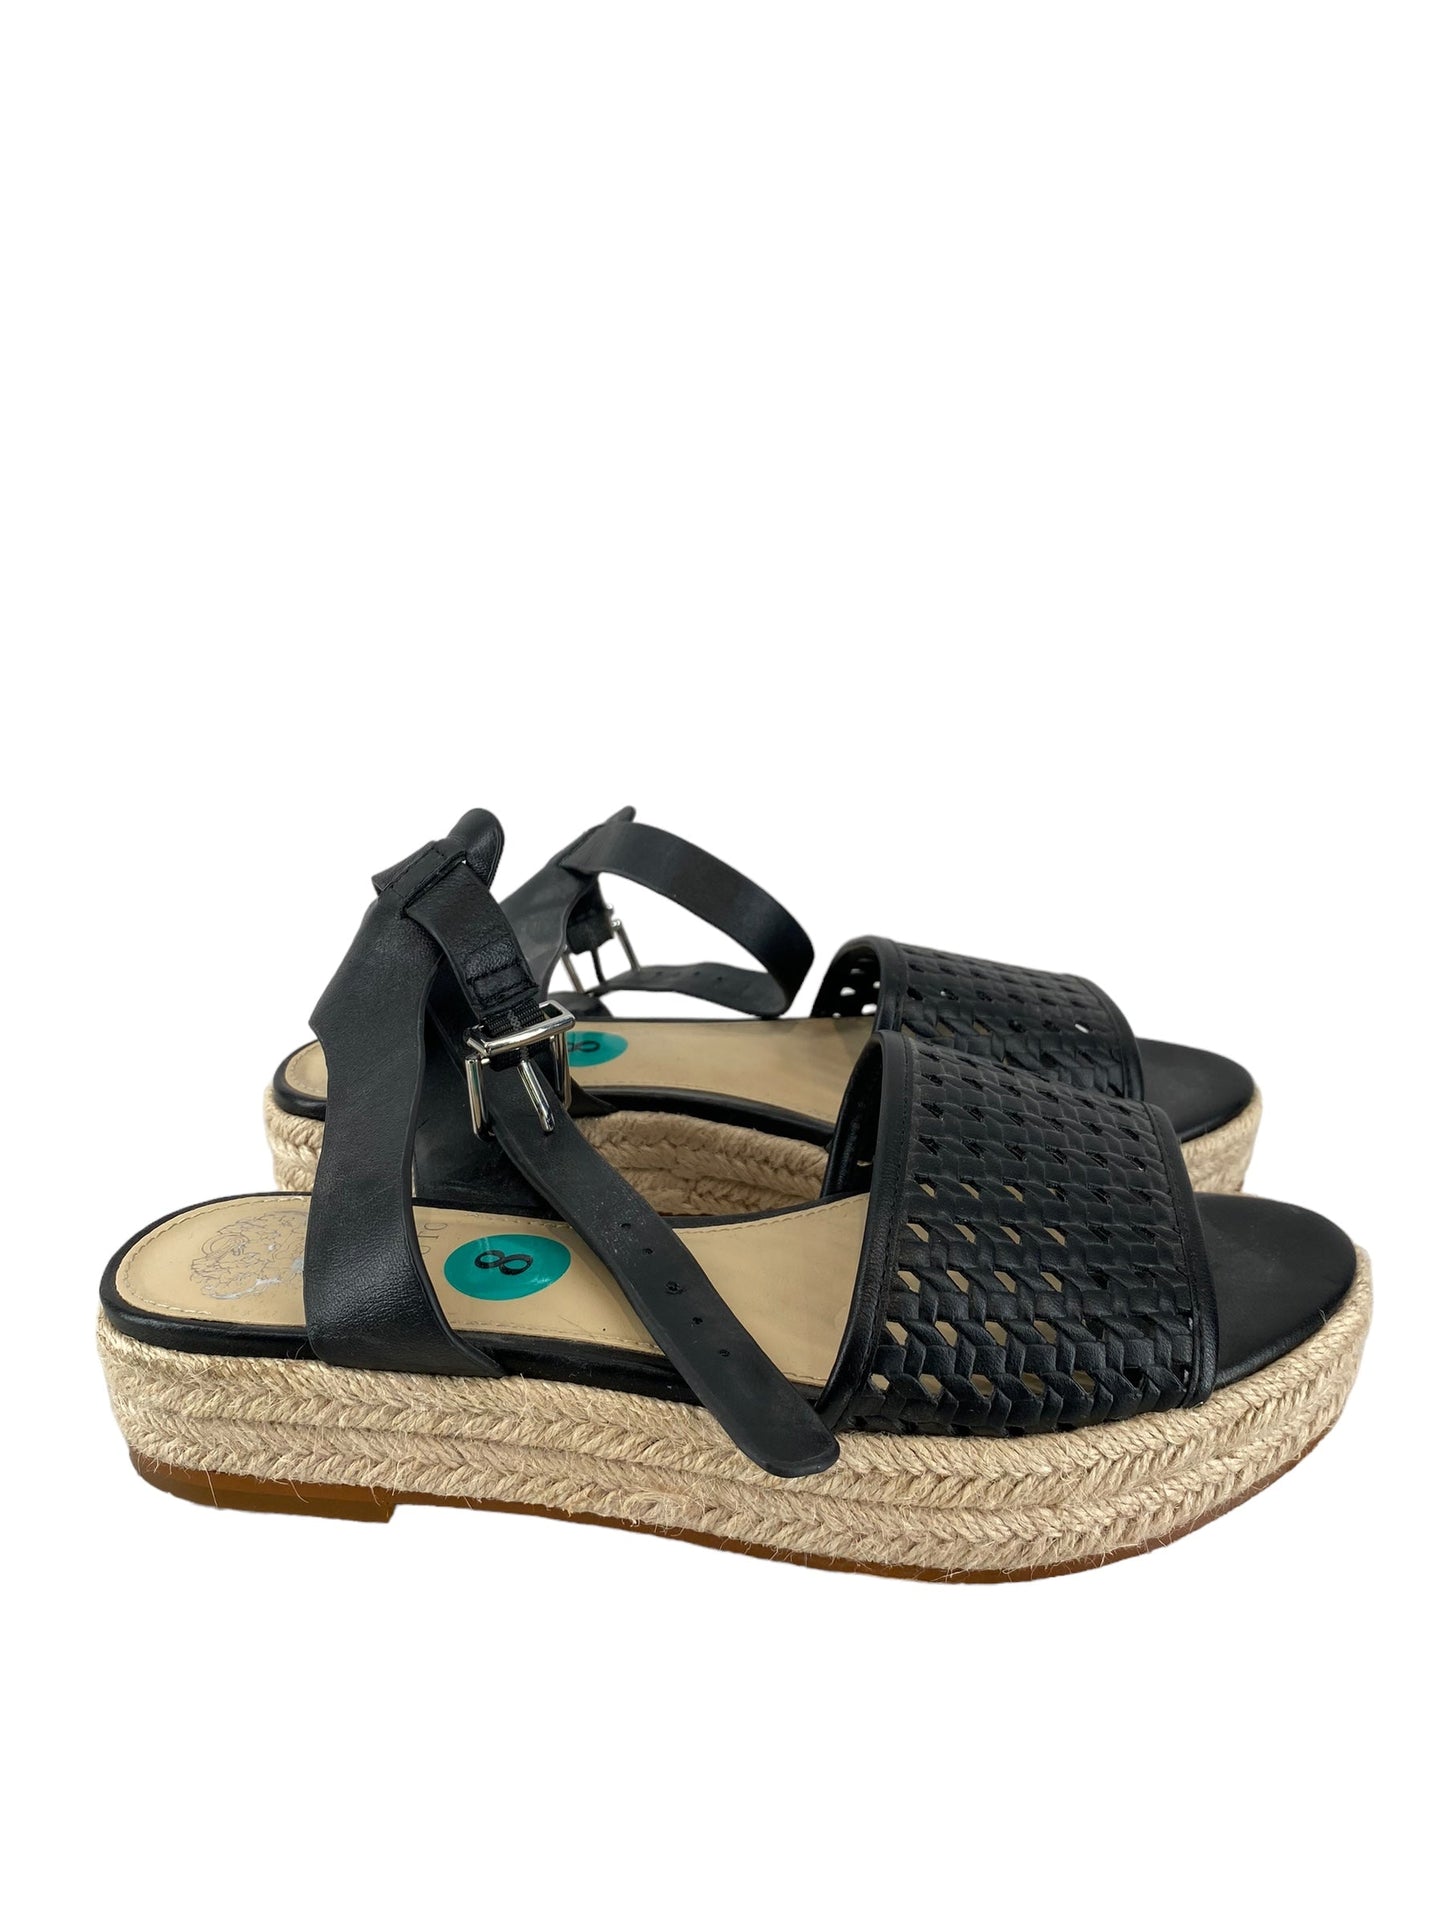 Black Sandals Heels Platform Vince Camuto, Size 8